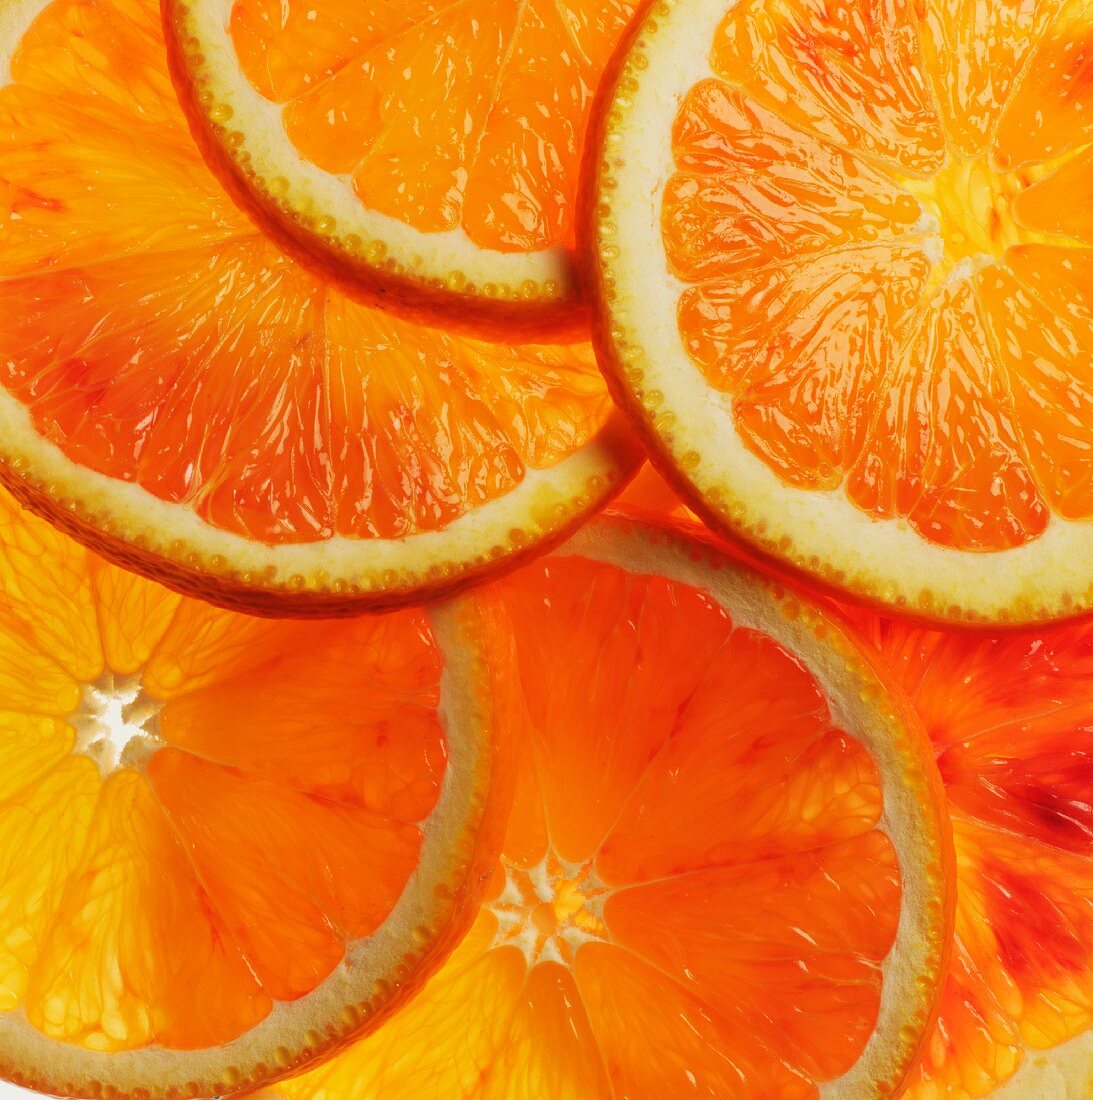 Orangenscheiben